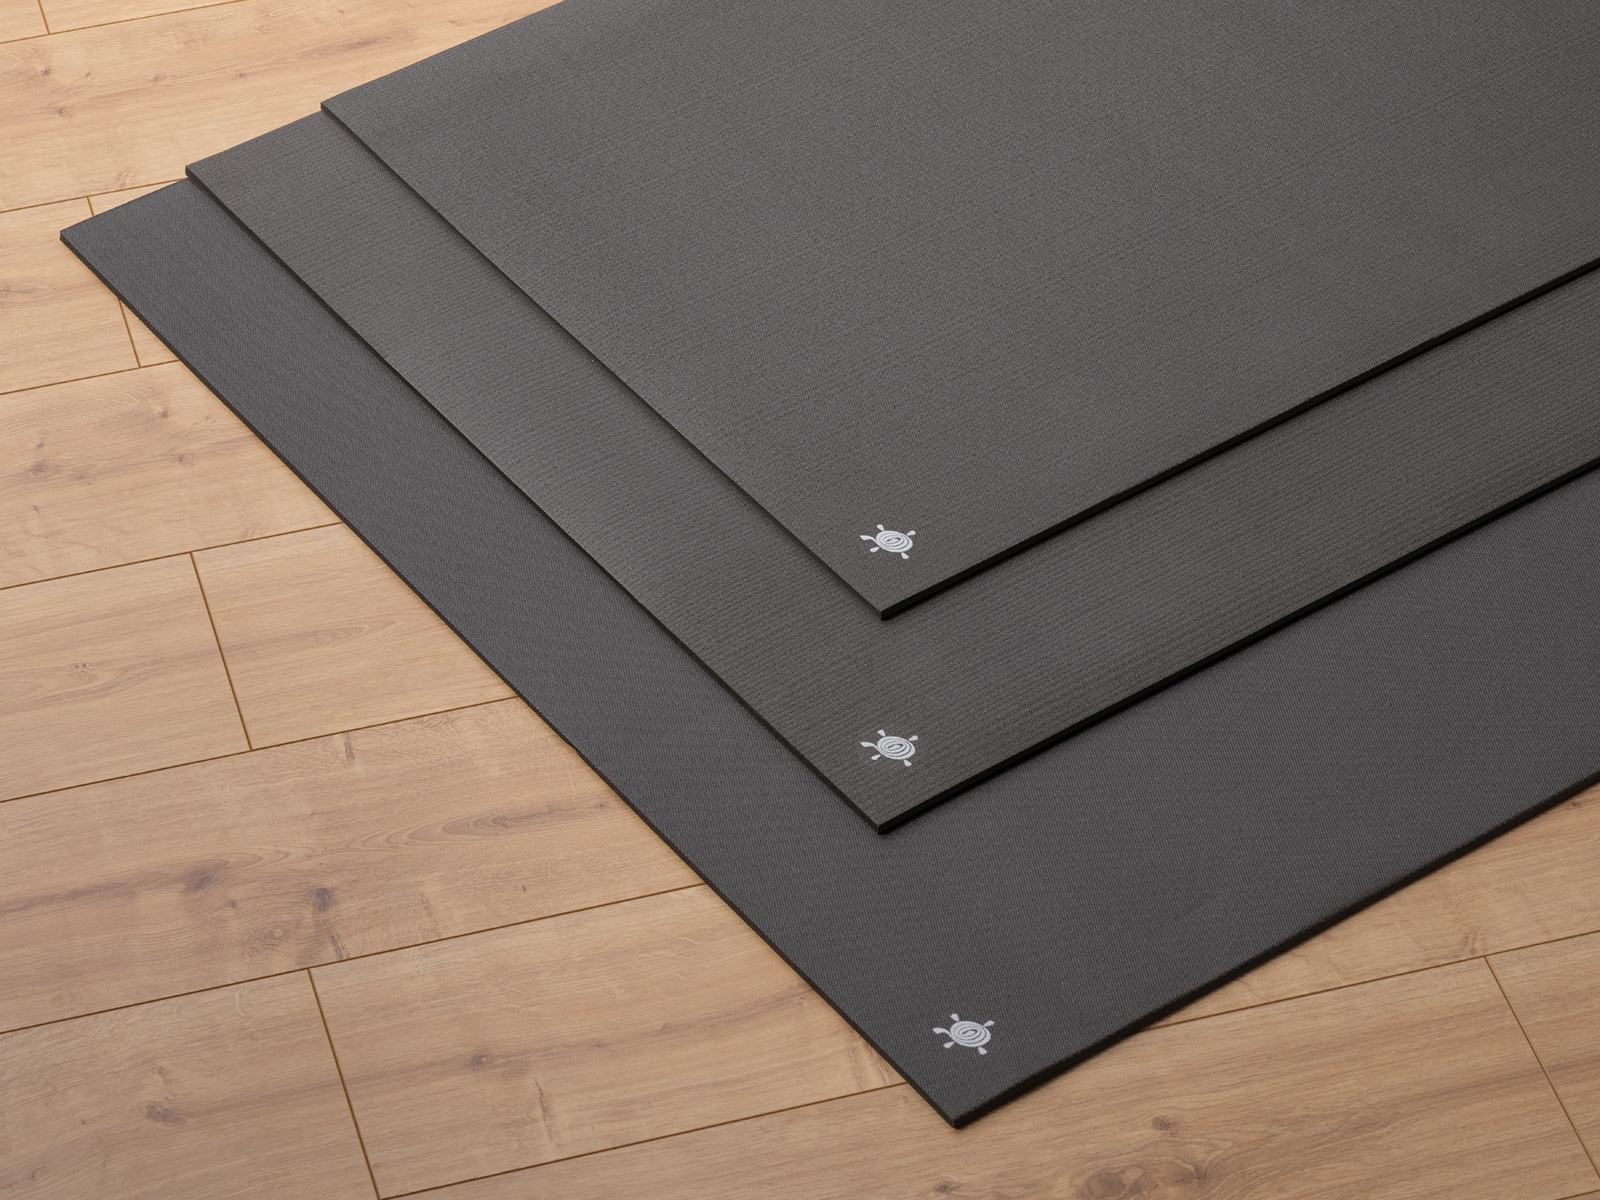 Kurma CORE Black Yogamatten in 3 Größen auf Parkettboden gestapelt